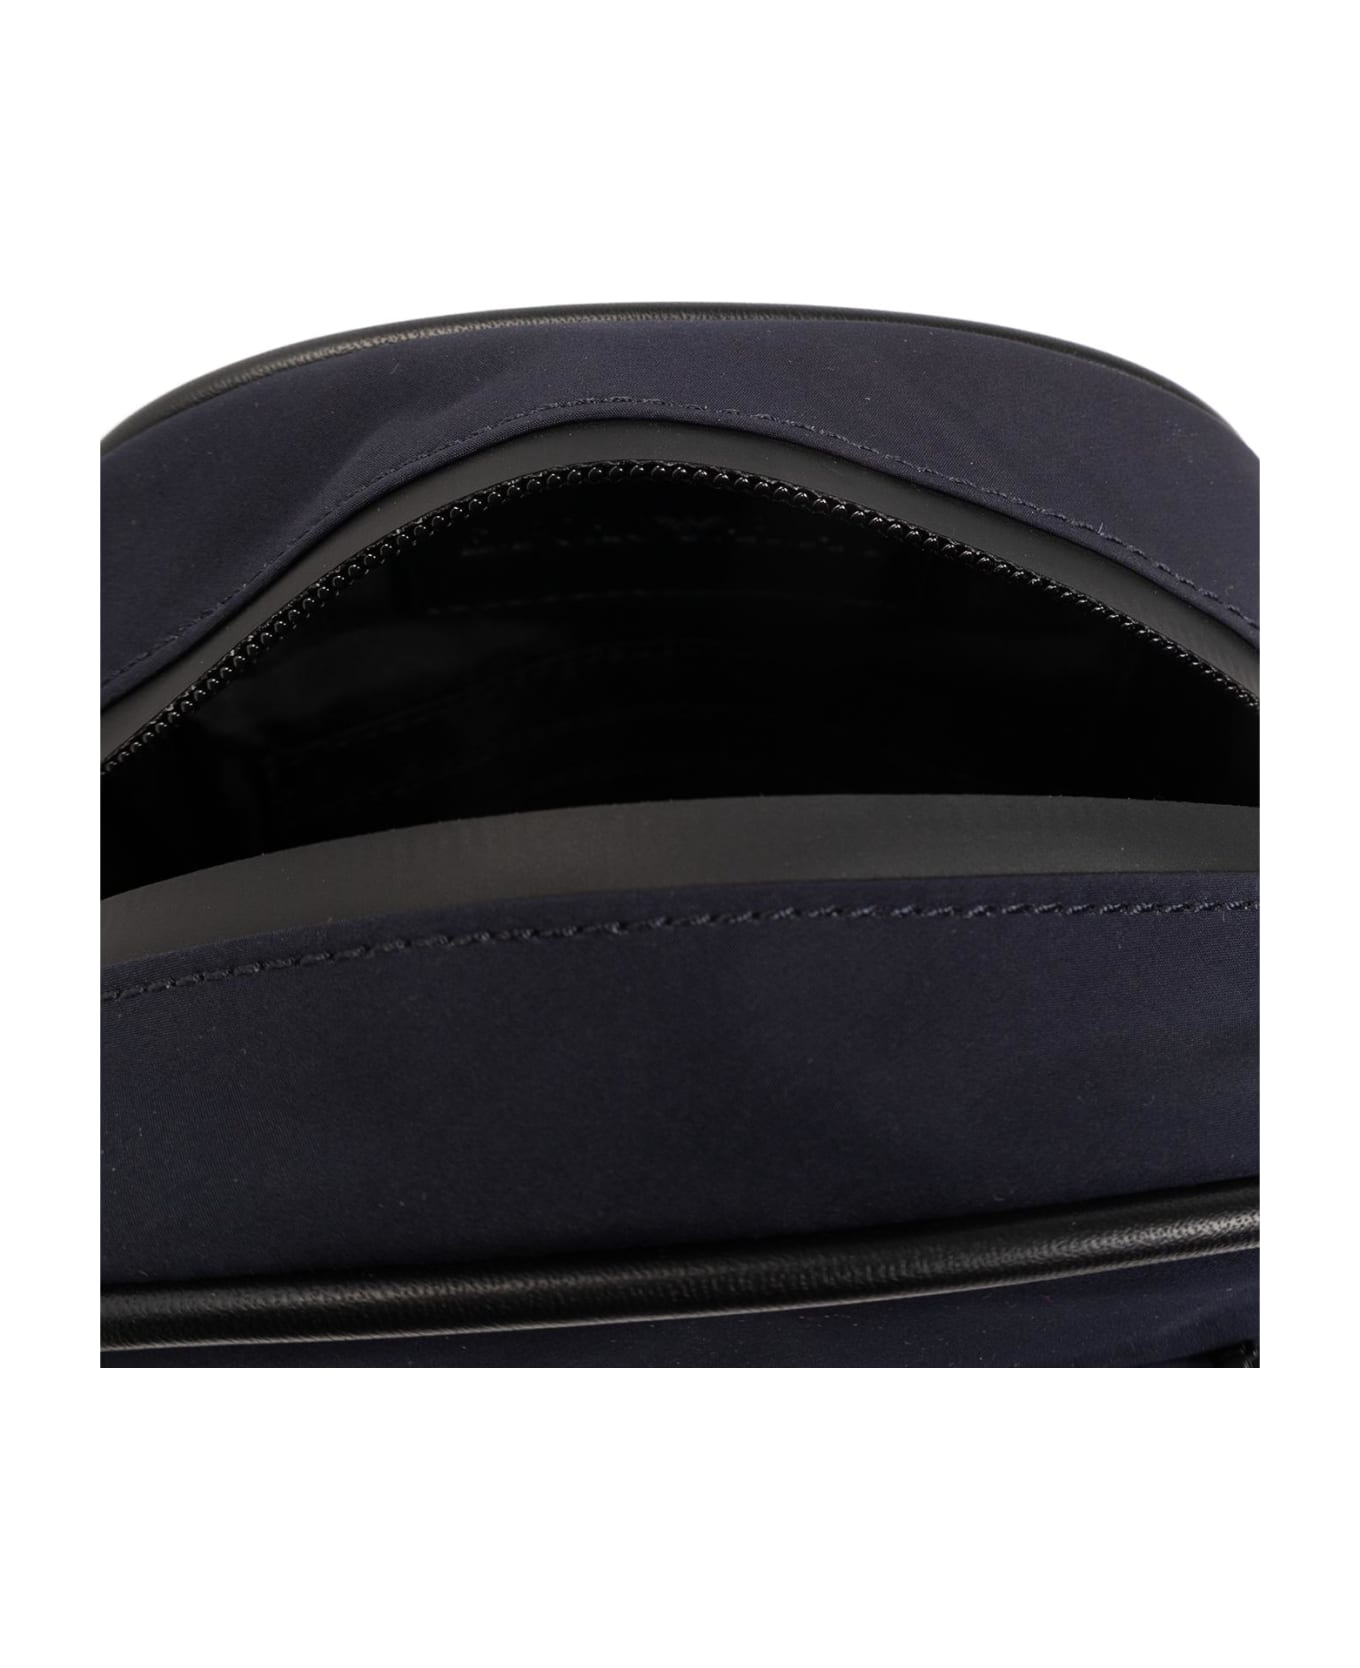 Emporio Armani Shoulder Bag With Logo - Blu